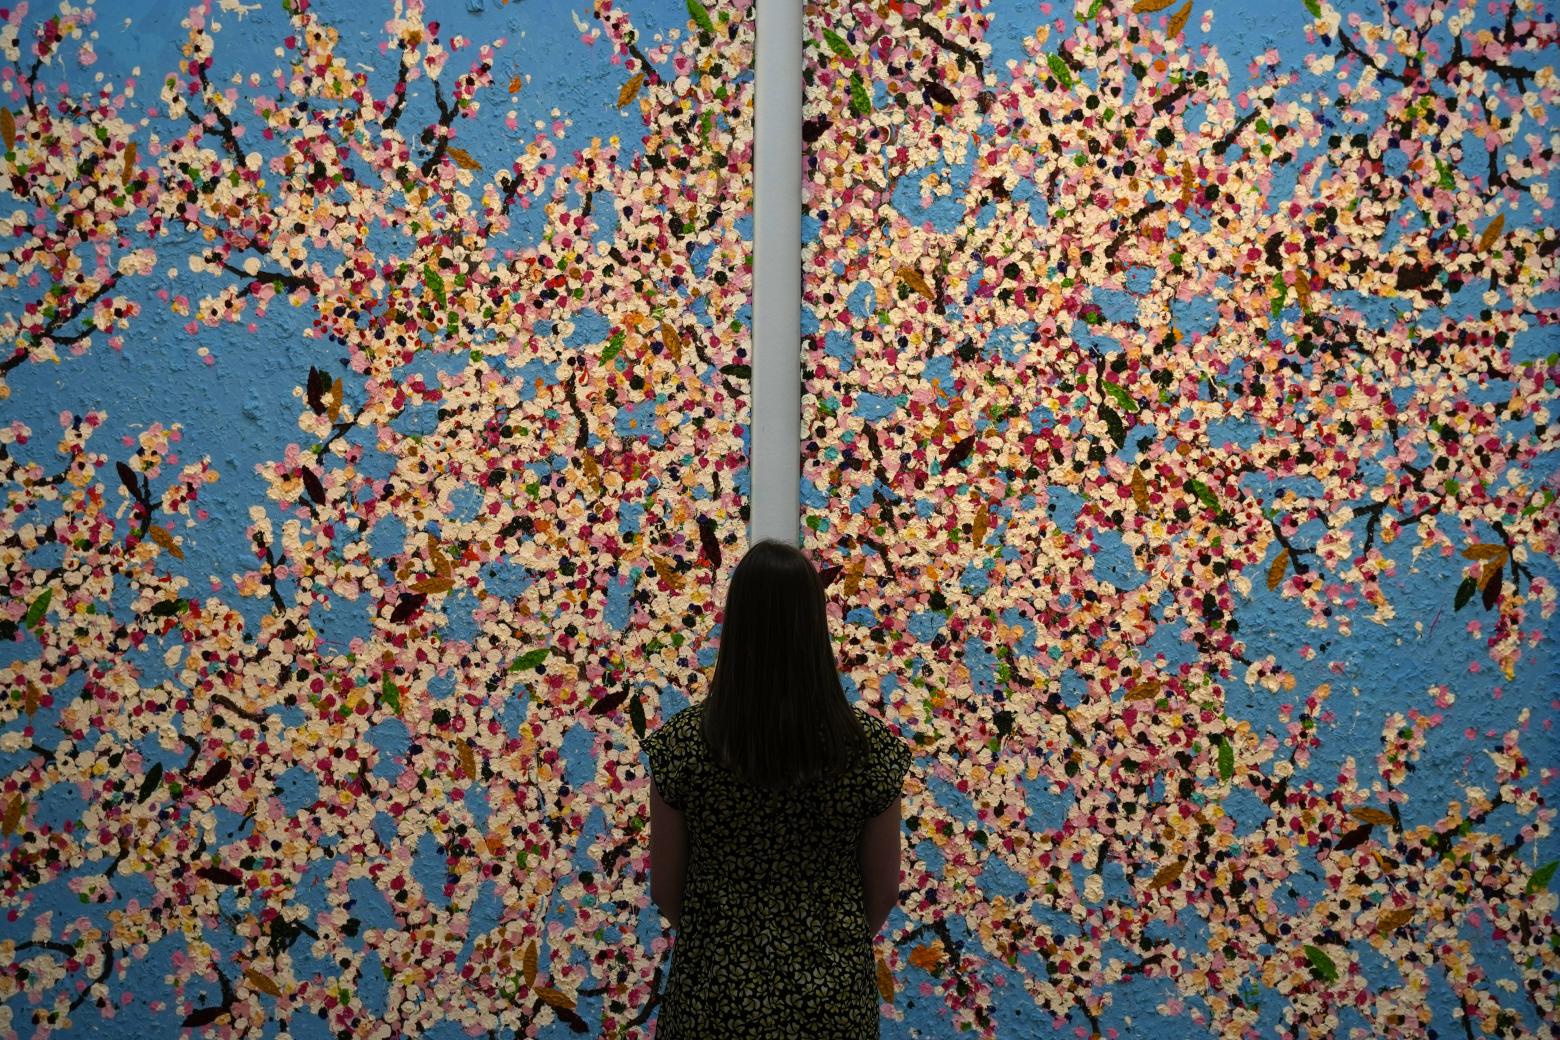 Ein Bild aus der Serie "Blossoms" bildet zurzeit den Höhepunkt der Auktion von Sotheby's New York in London